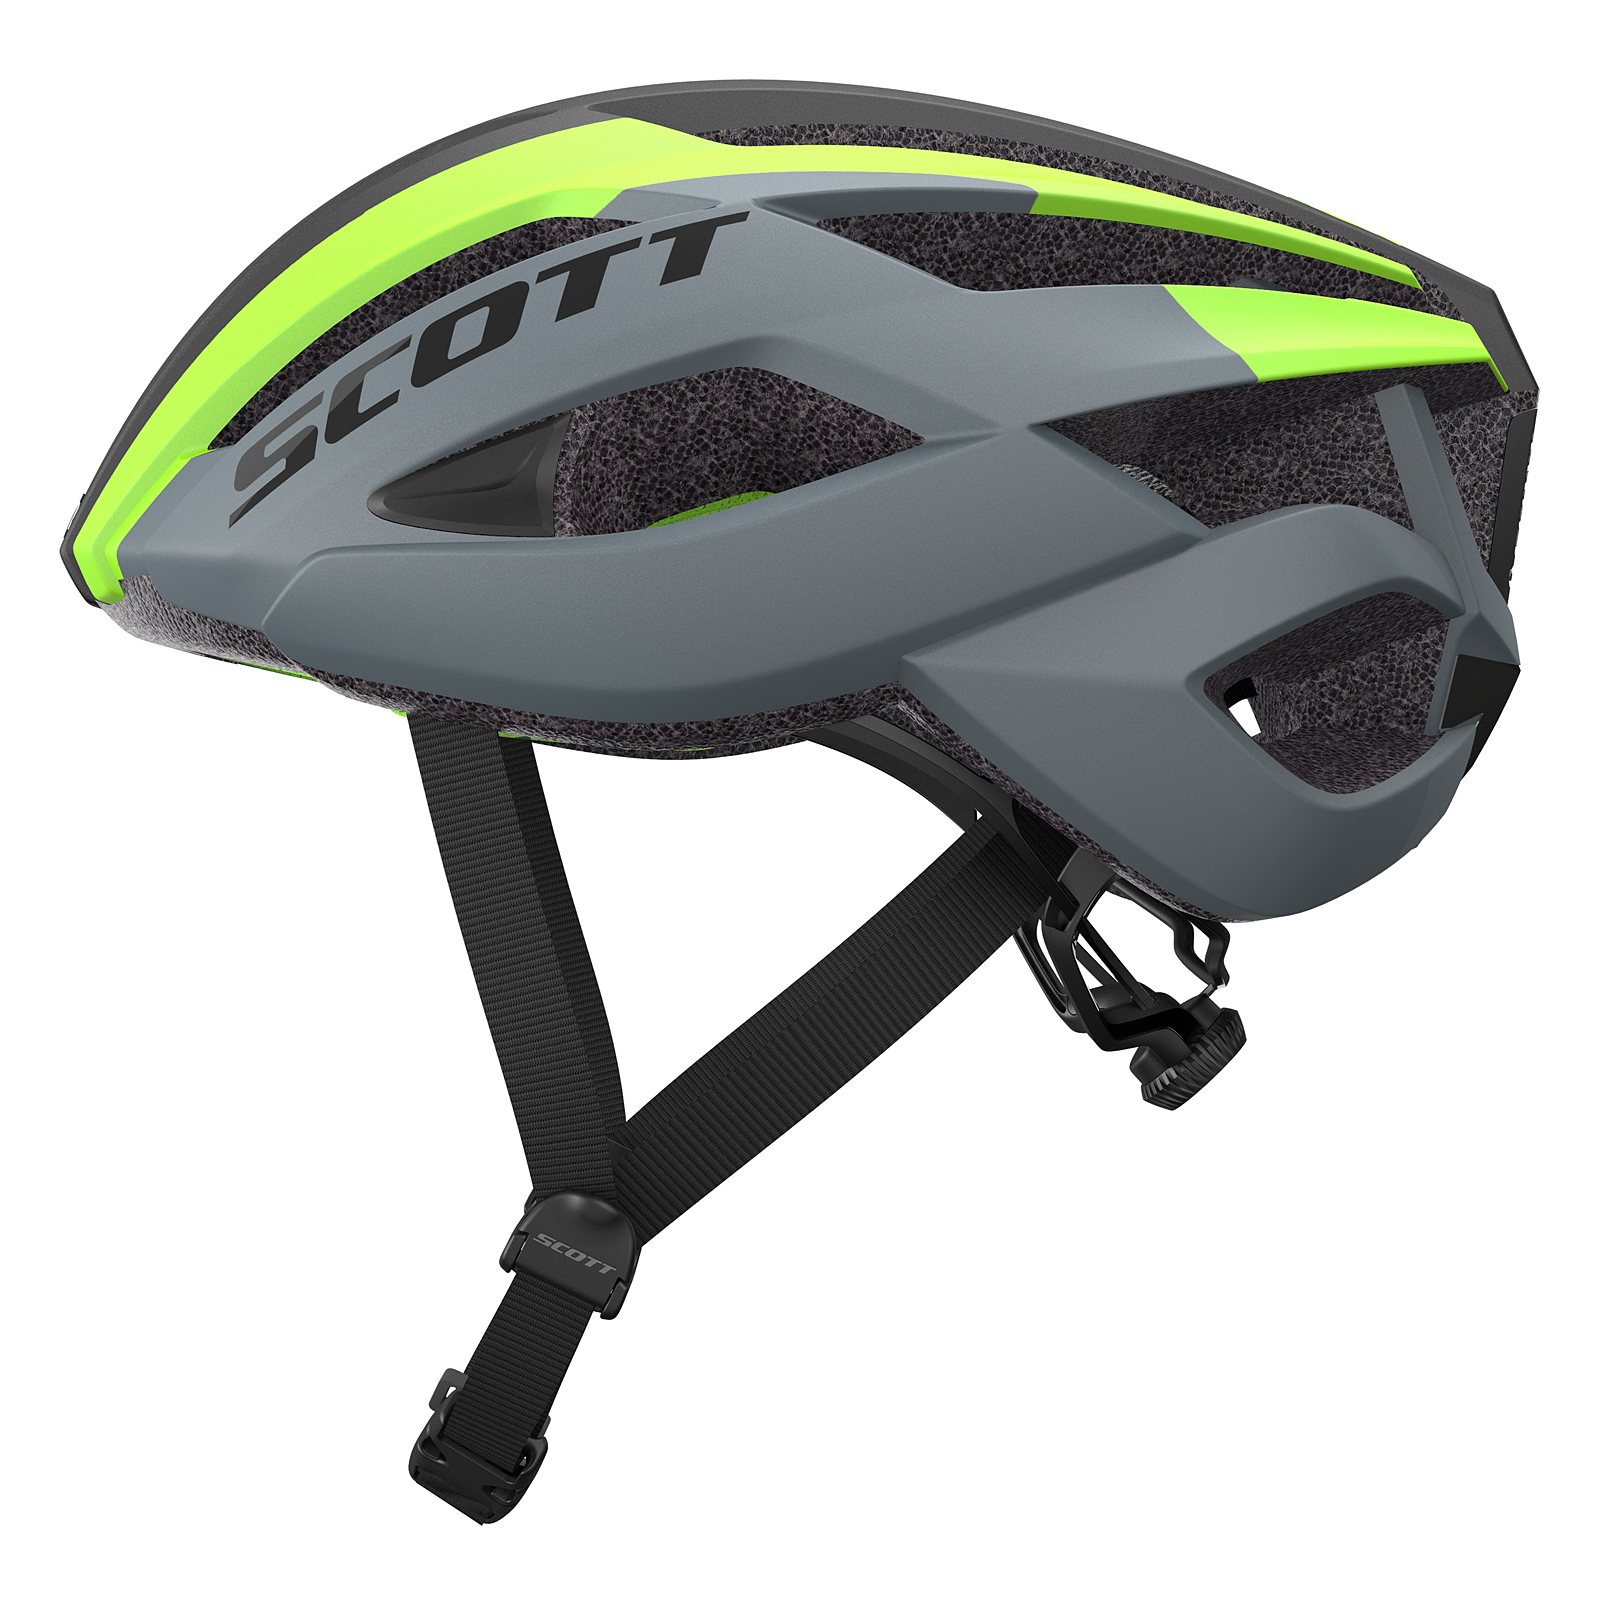 Scott Arx MTB Fahrrad Helm grau/grün 2019 von Top Marken